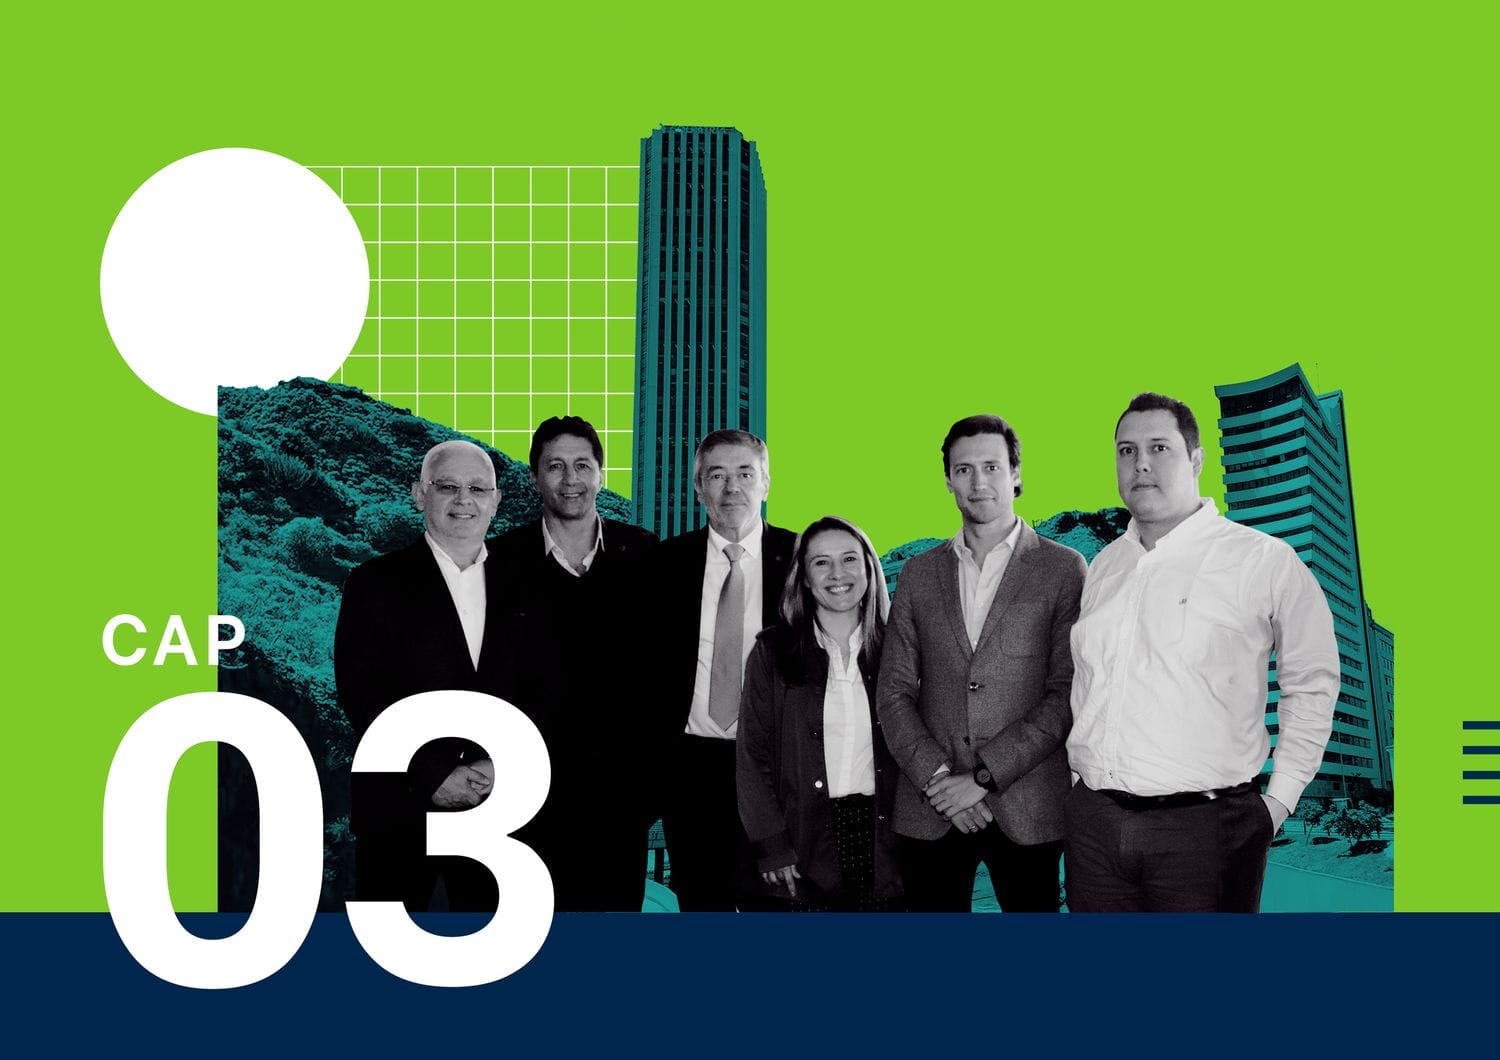 Grupo de seis profesionales de pie en un gráfico estilo collage con paisaje urbano y gráficos verdes de fondo, con la etiqueta "cap 03".